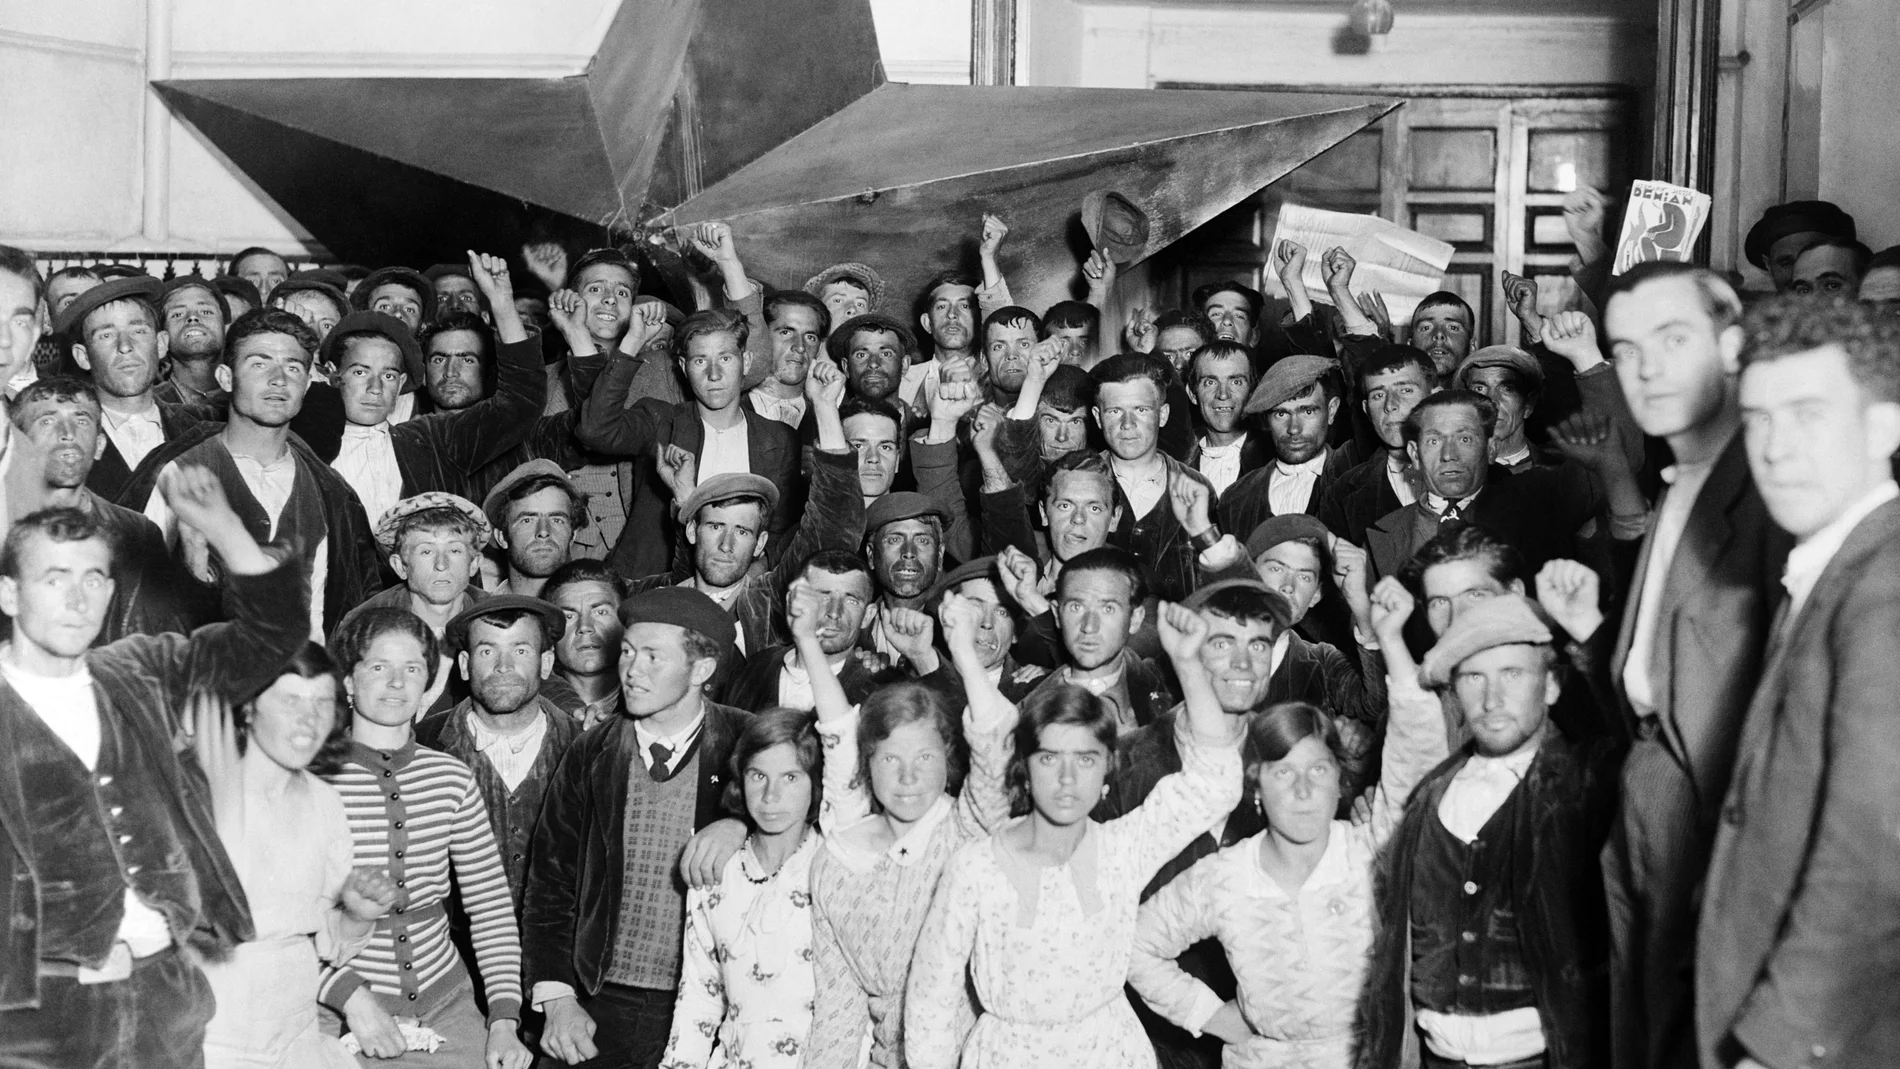 Simpatizantes del Frente Popular posan puño en alto junto a una enorme estrella de cinco puntas en una imagen tomada en mayo de 1936